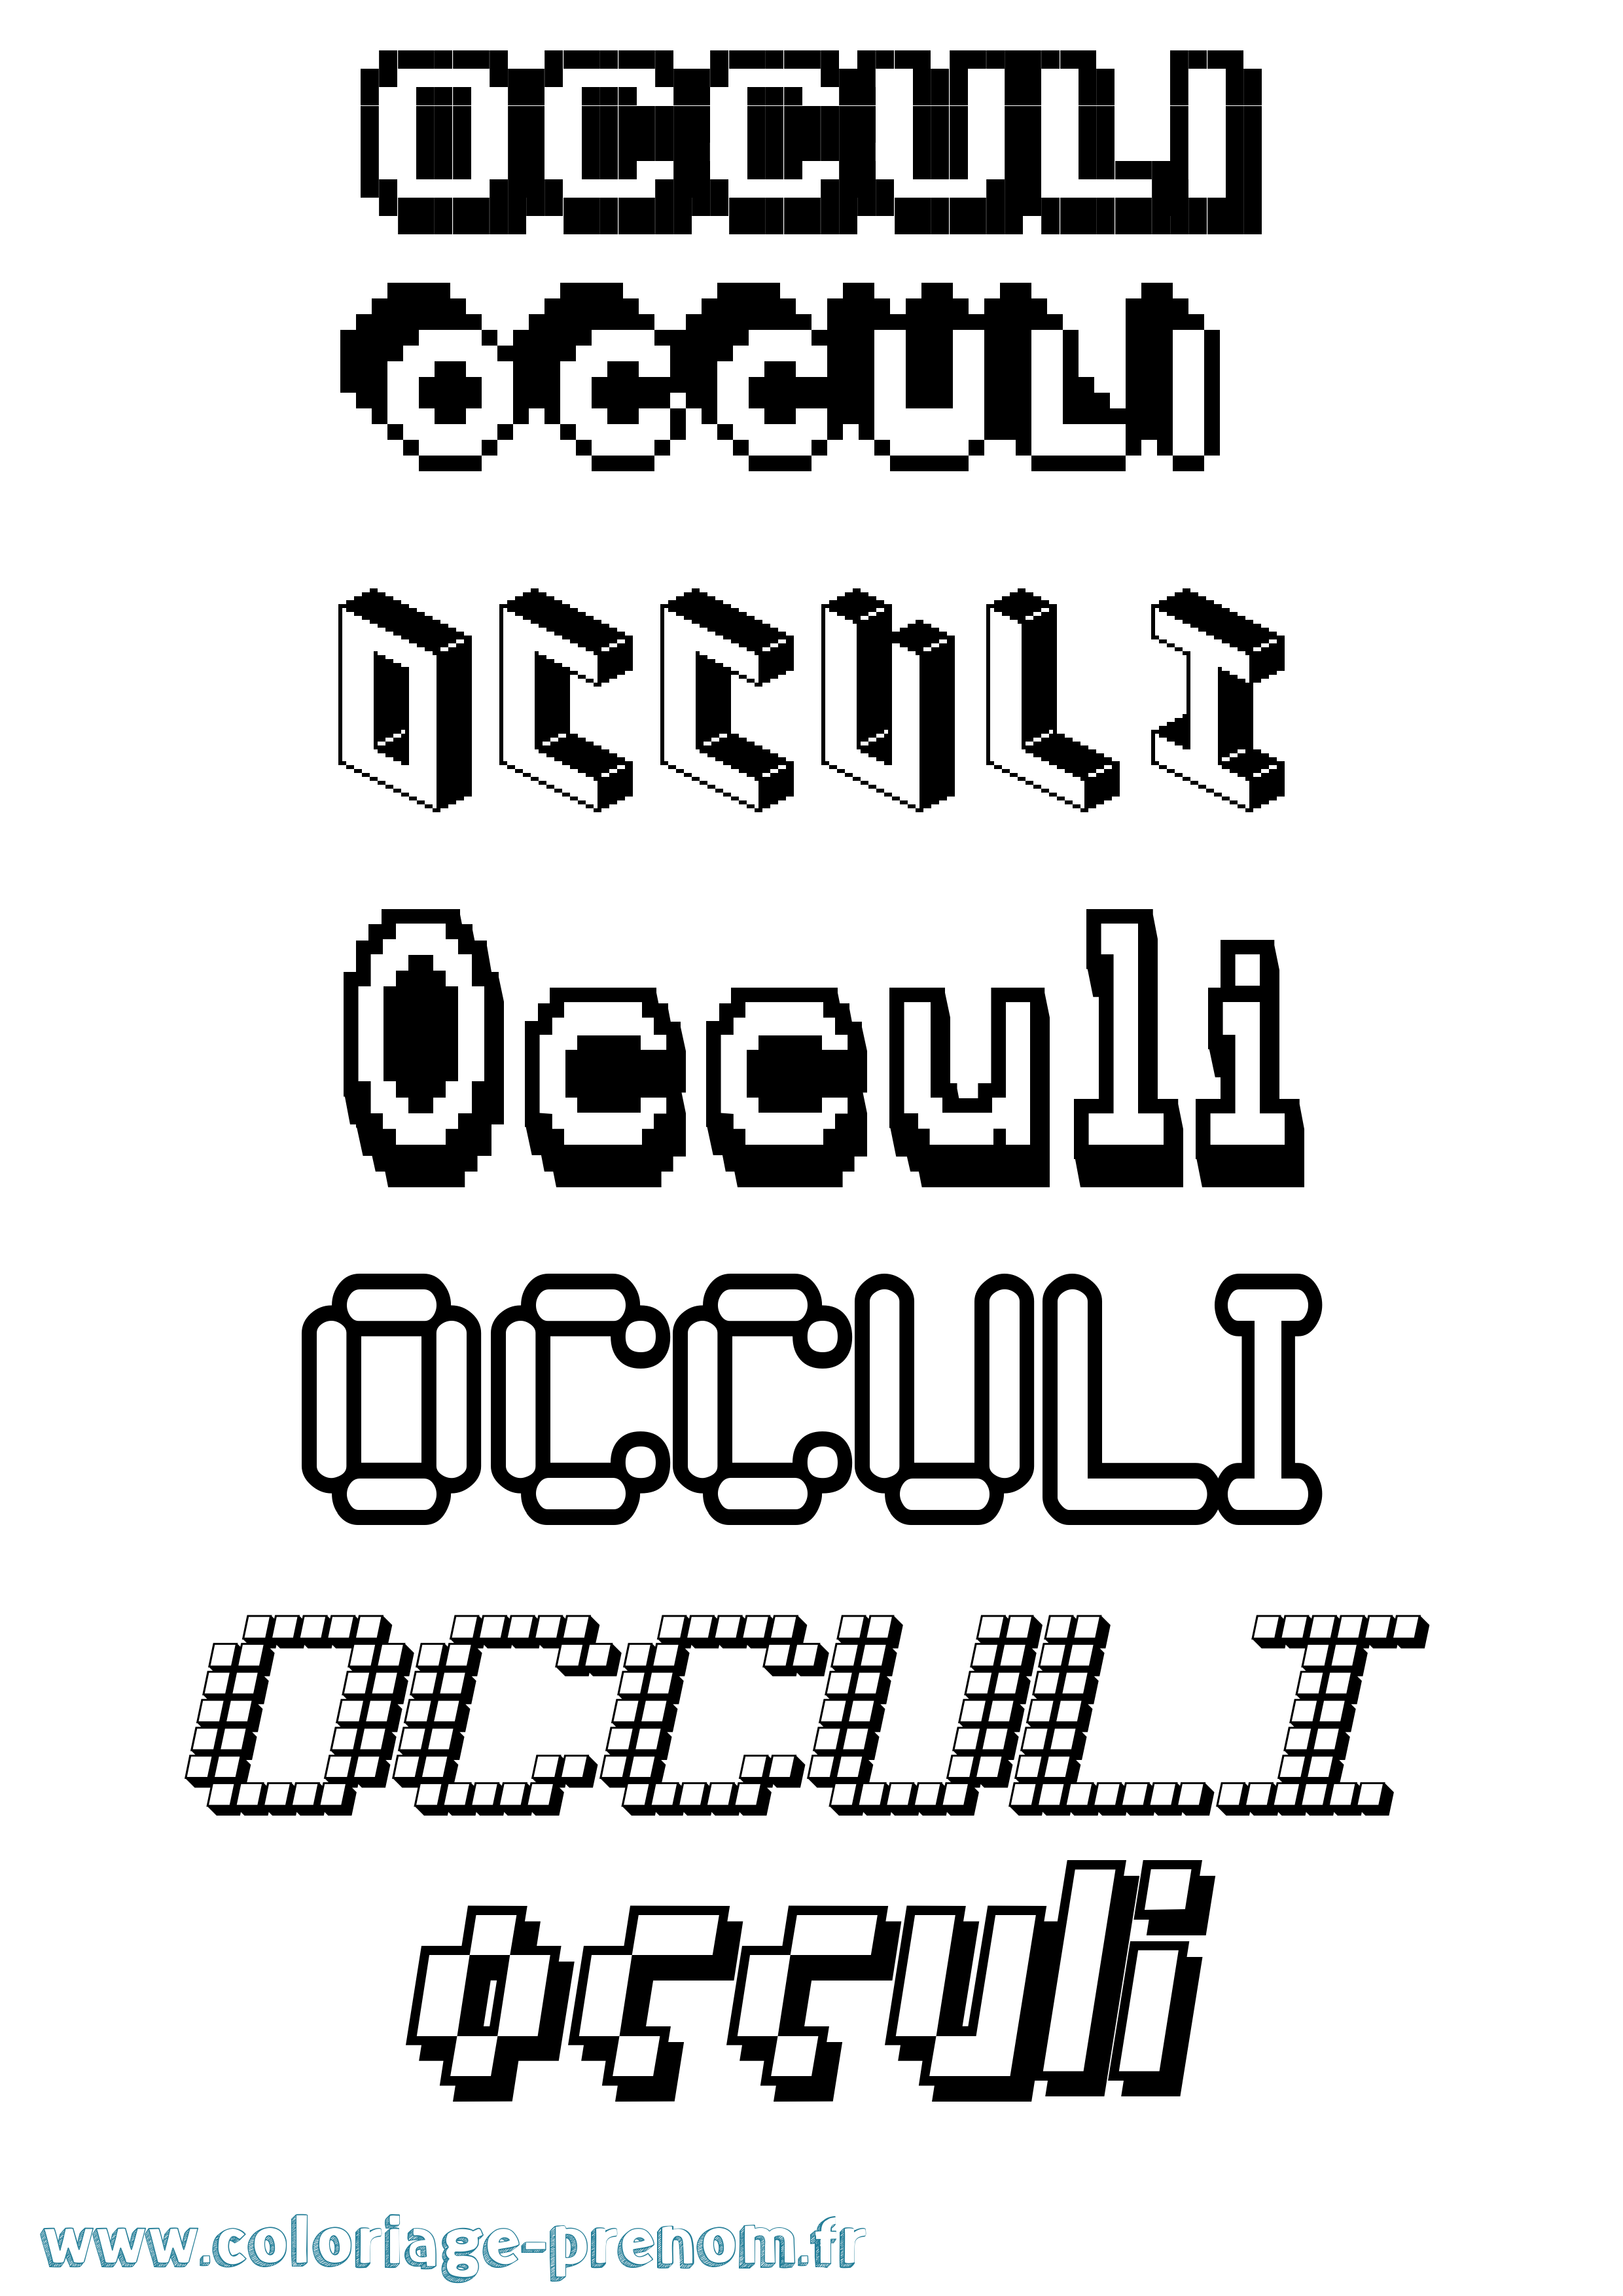 Coloriage prénom Occuli Pixel